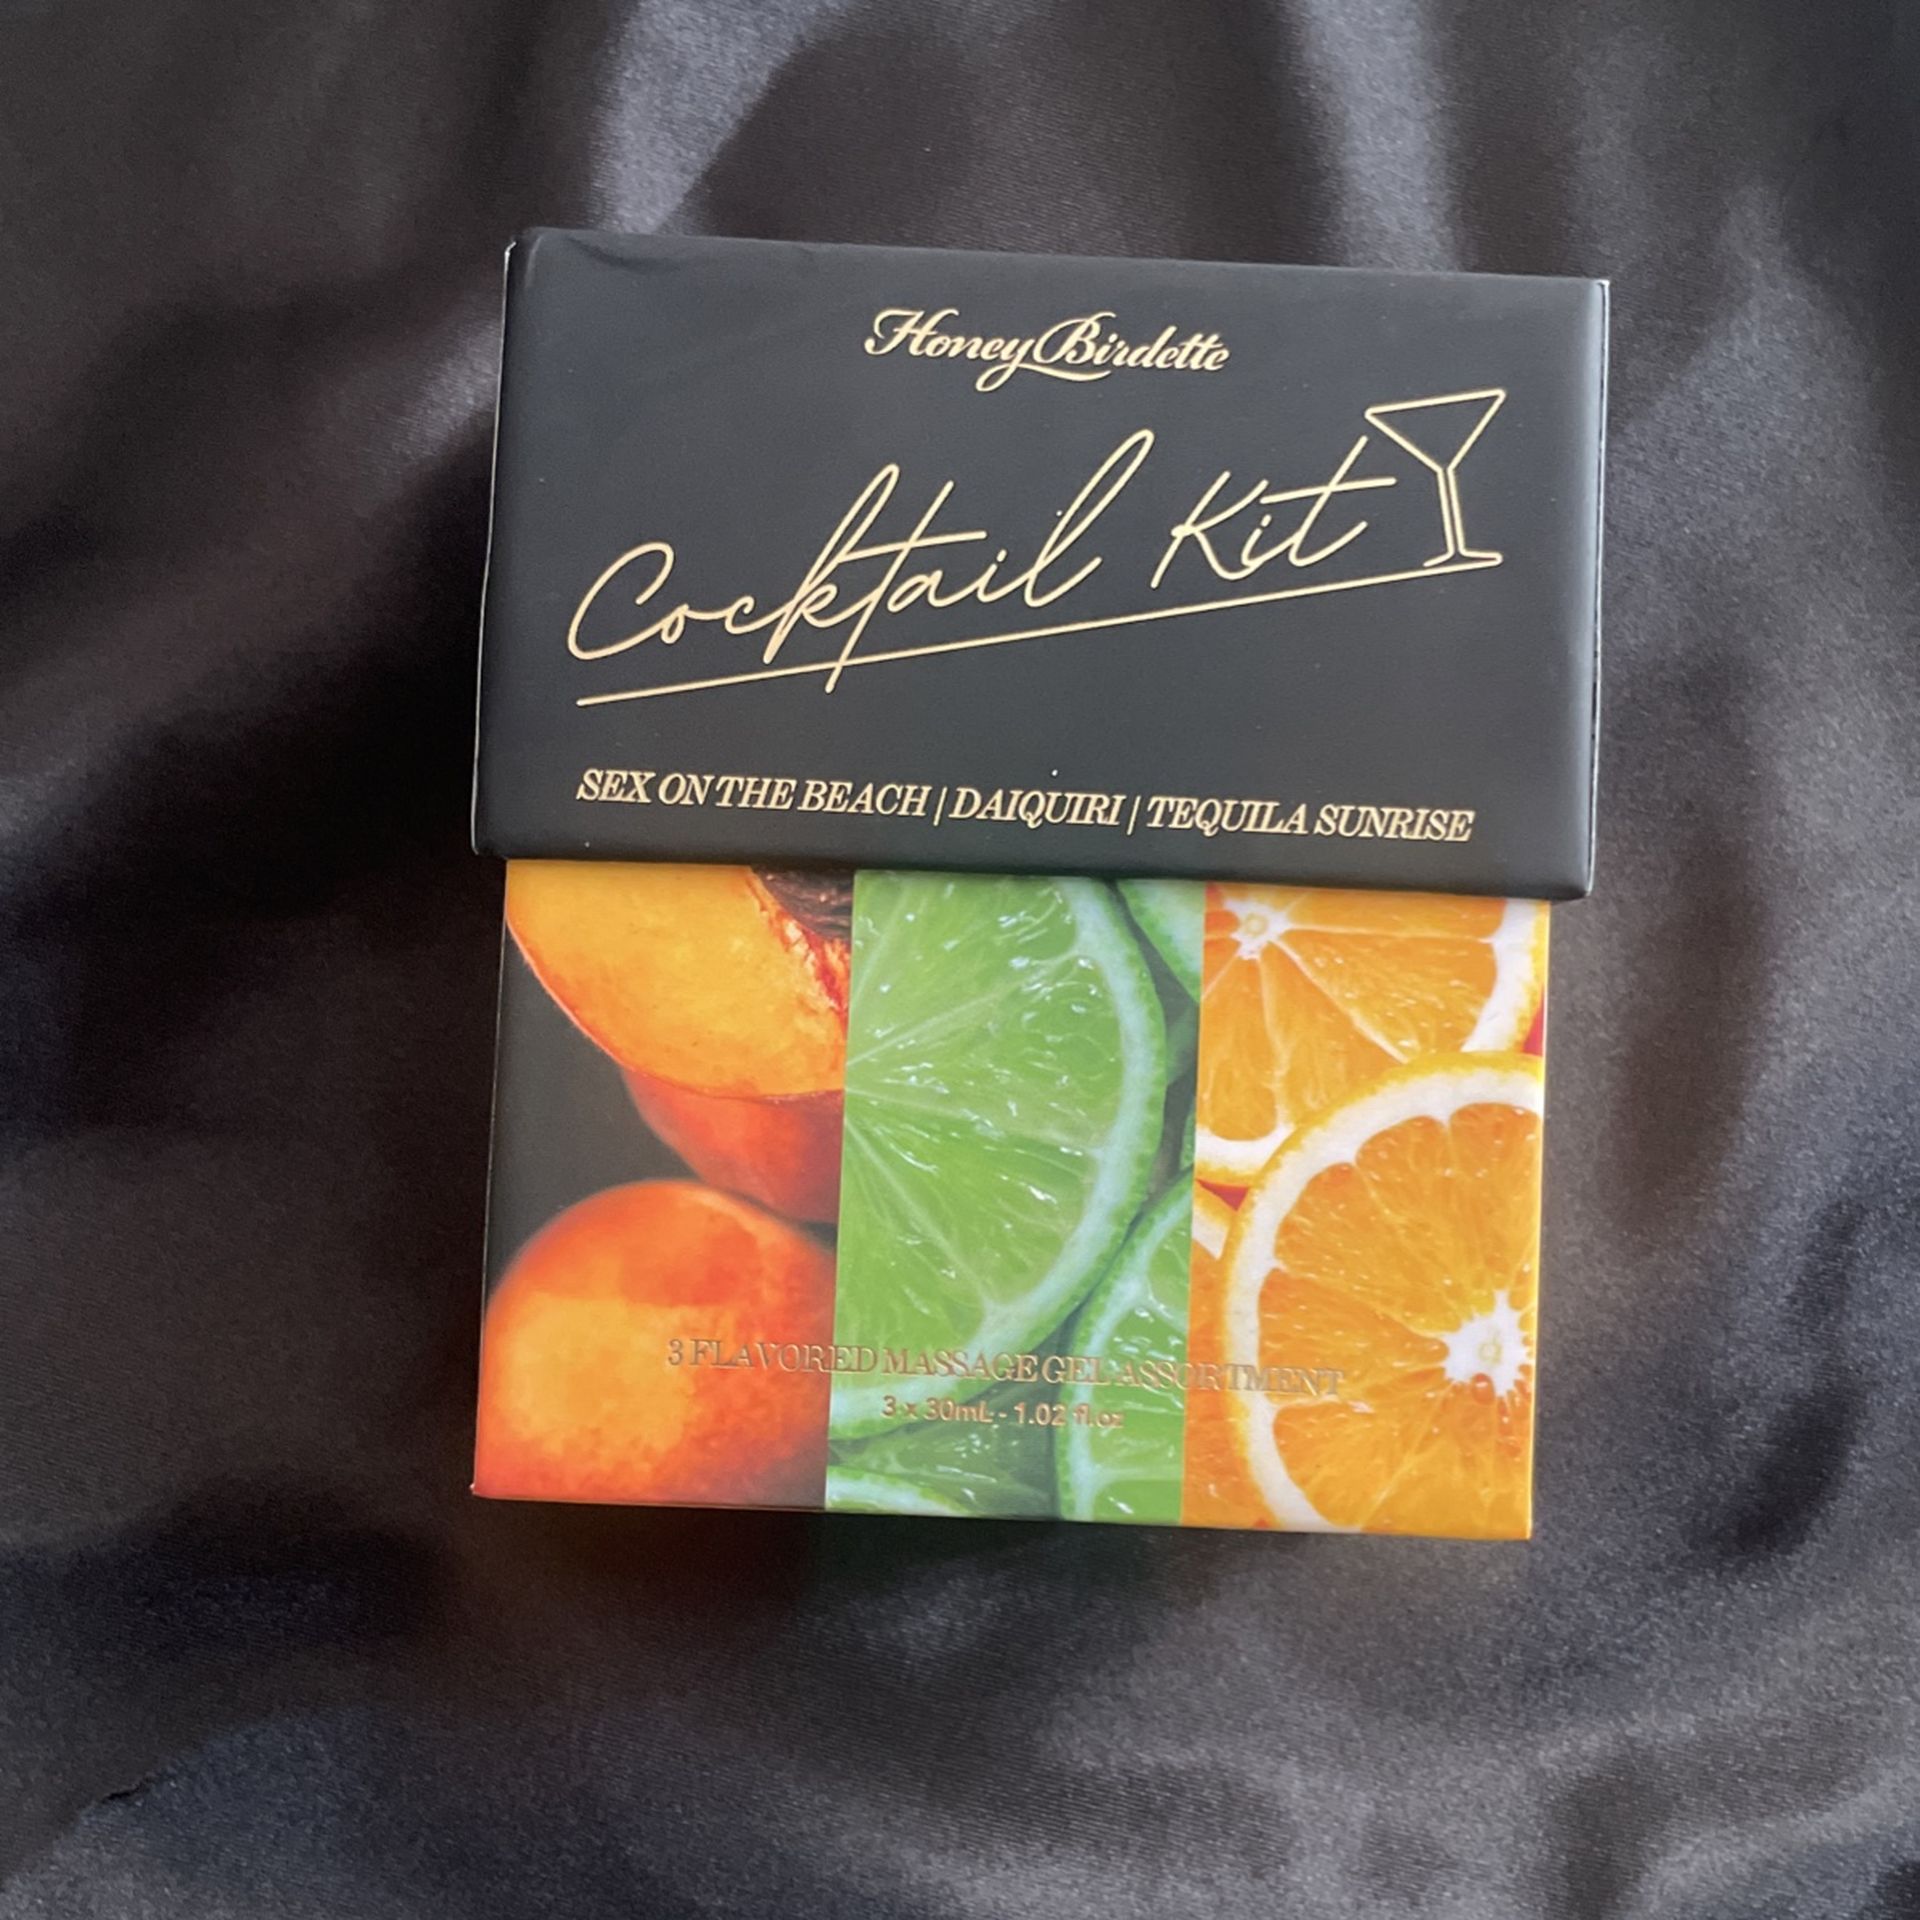 Mini Edible Cocktail Massage Gel Kit × 1 By HoneyBirdette